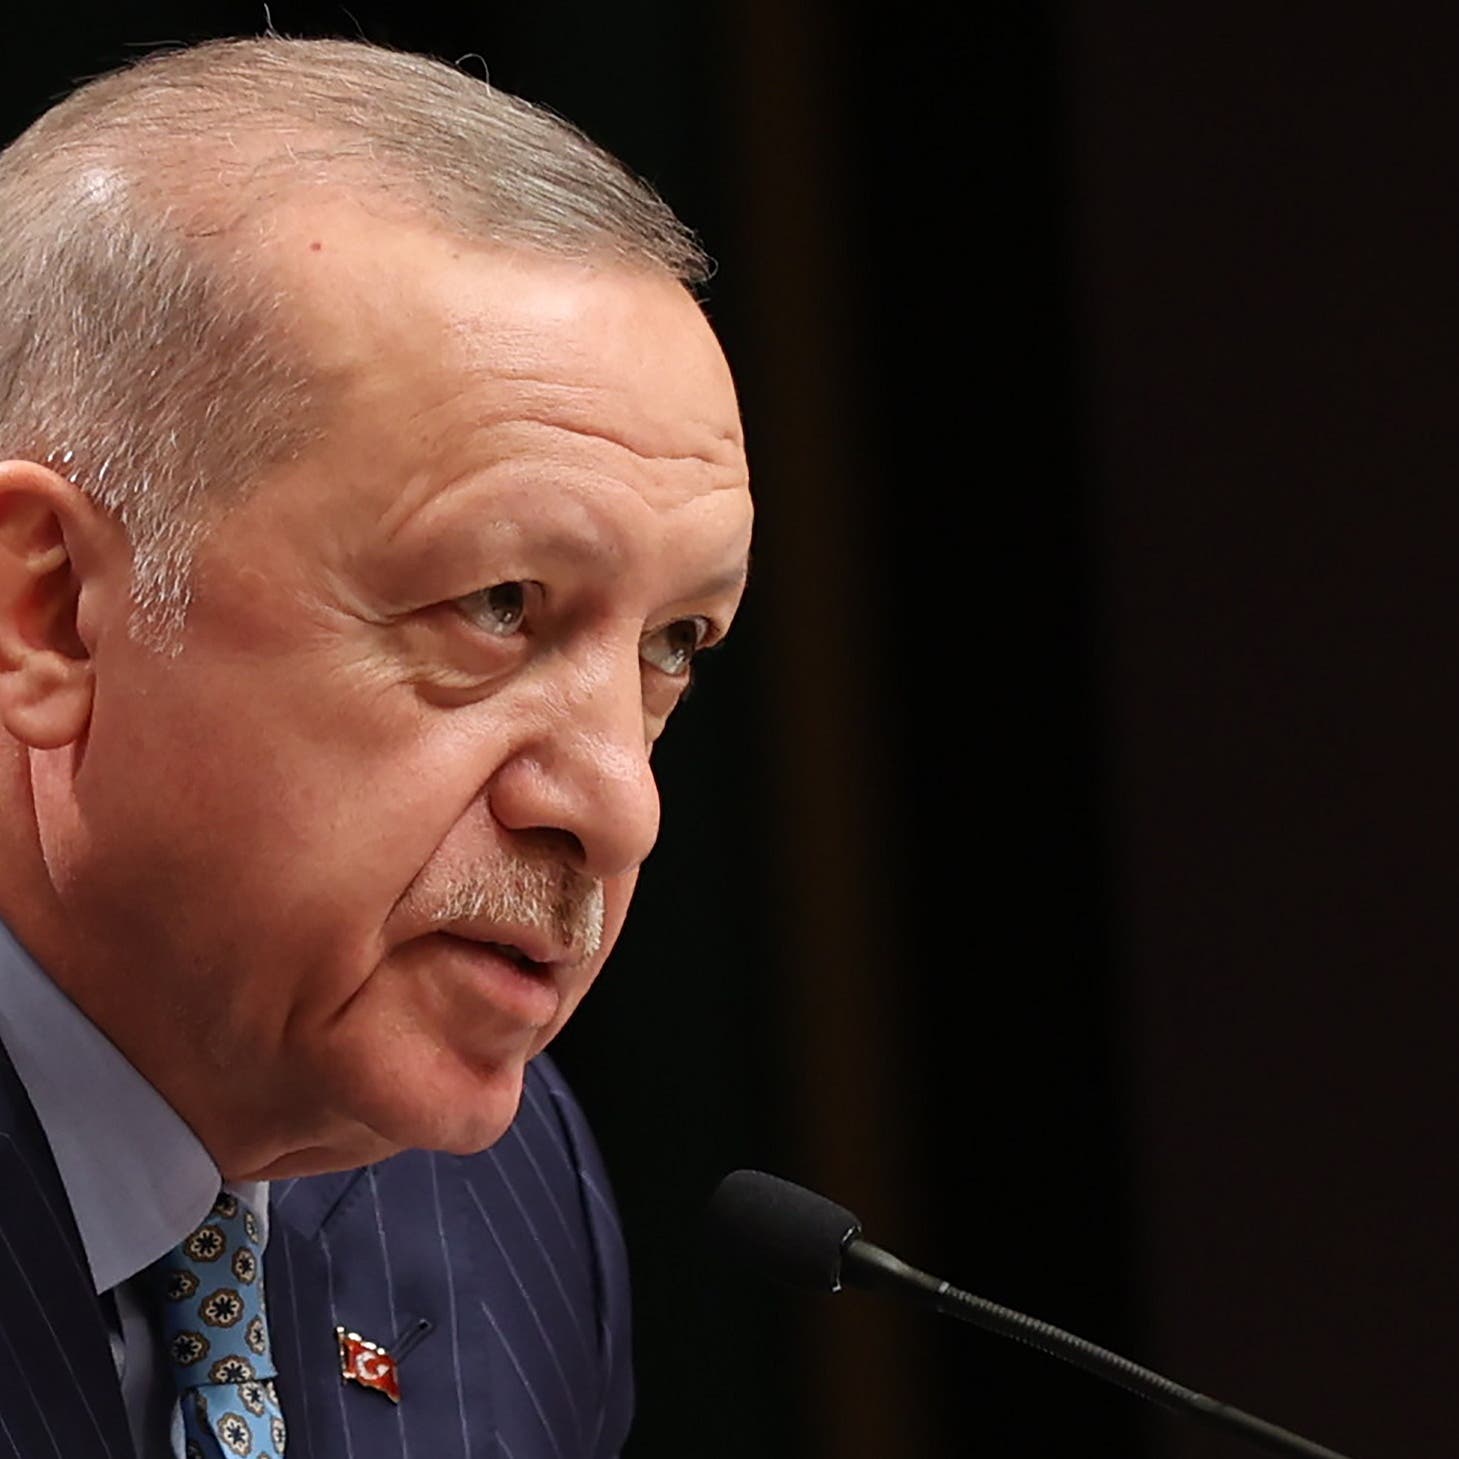 نائب تركي لأردوغان: اهتم بأزمة الشعب وتخلى عن "الأجندات الافتراضية"